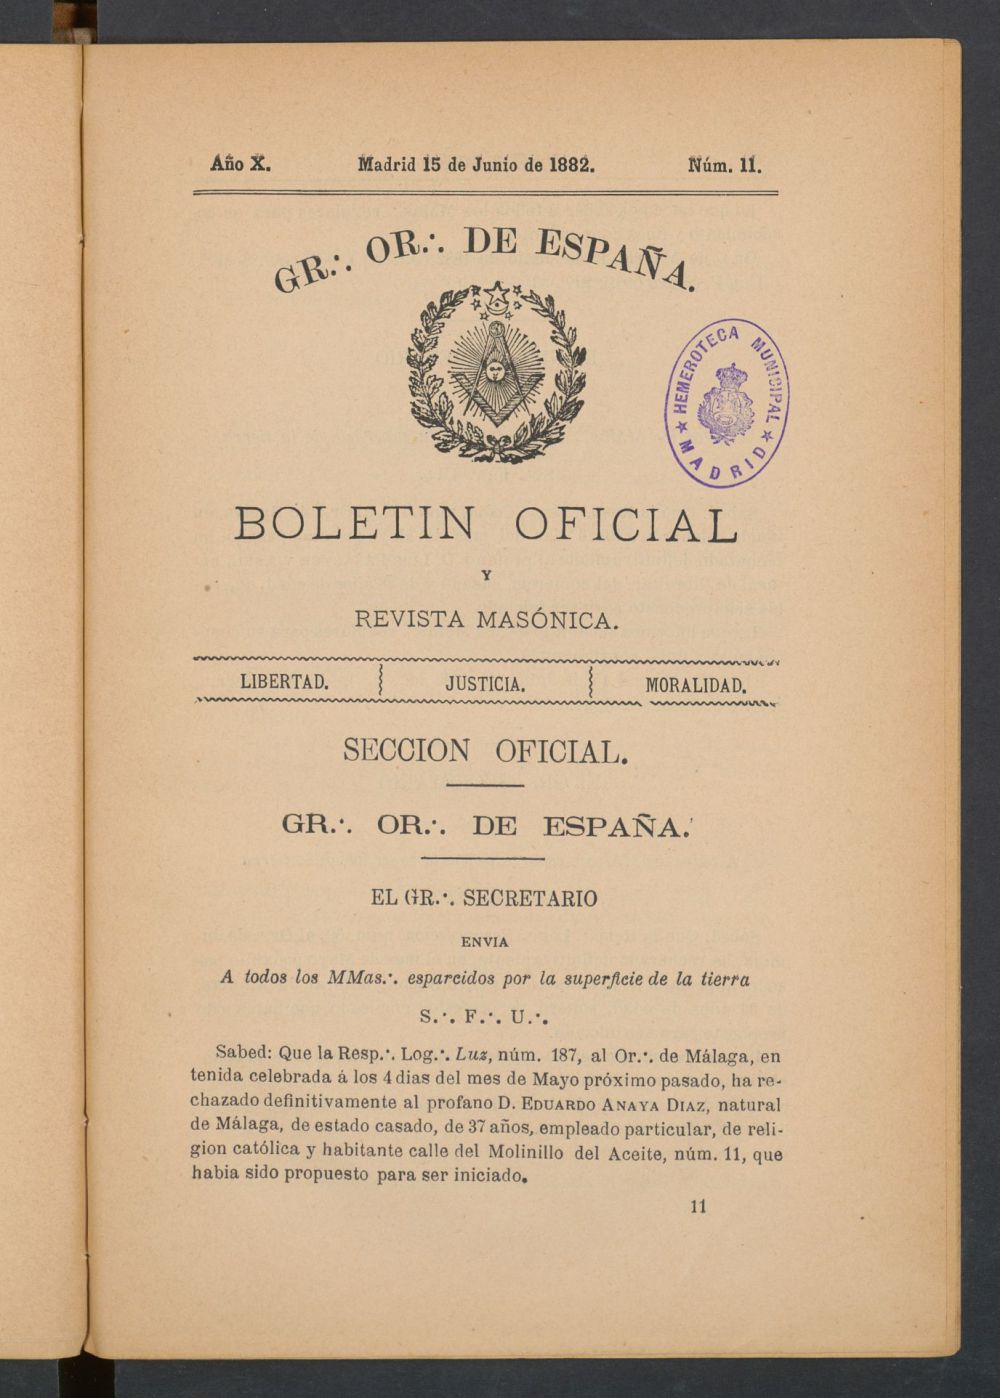 Boletn Oficial del Gran Oriente de Espaa del 15 de junio de 1882. N 11